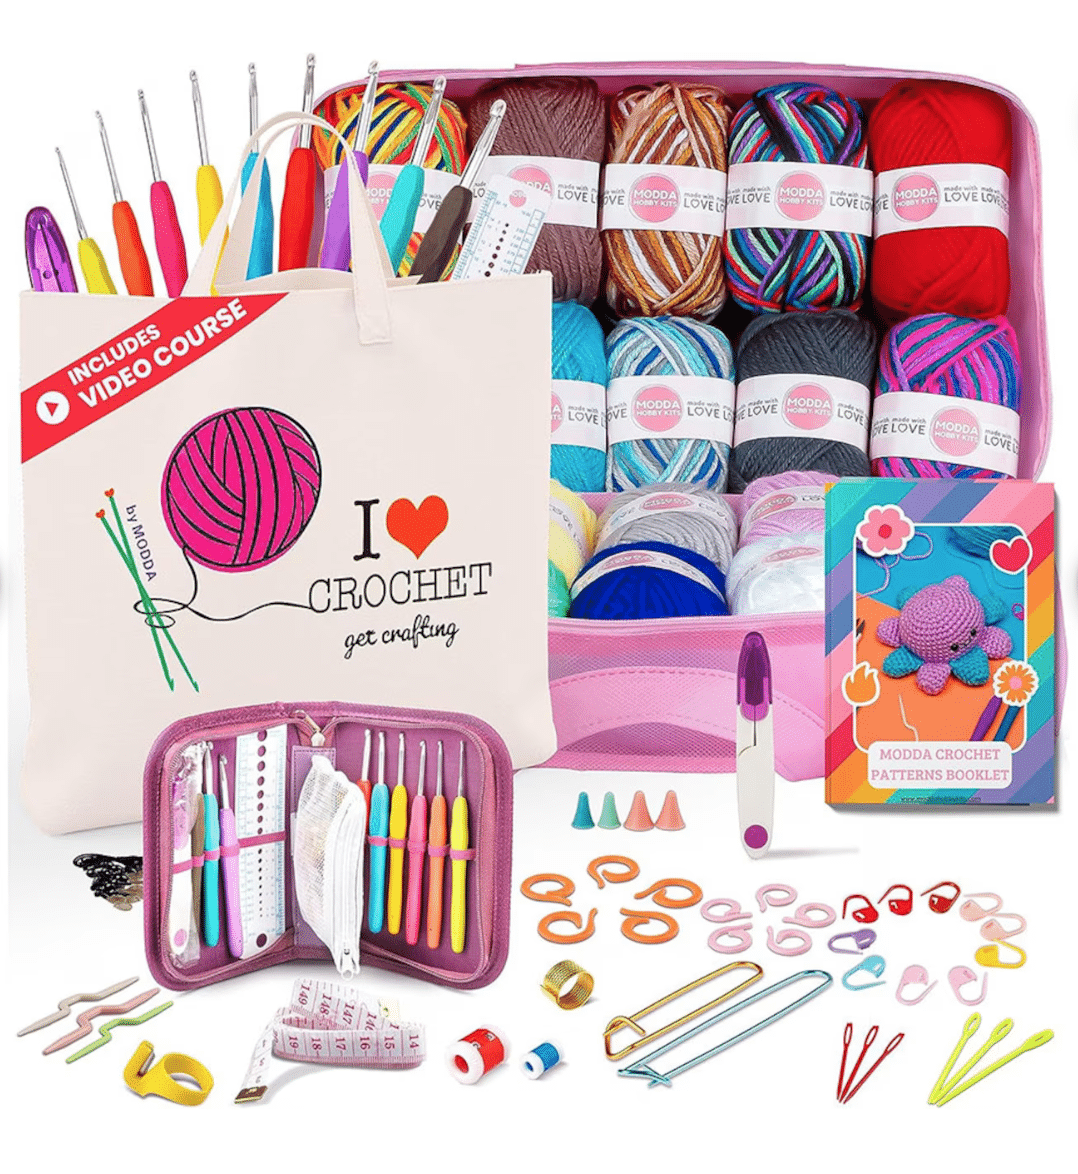 A pink bag filled with beginner crochet supplies.